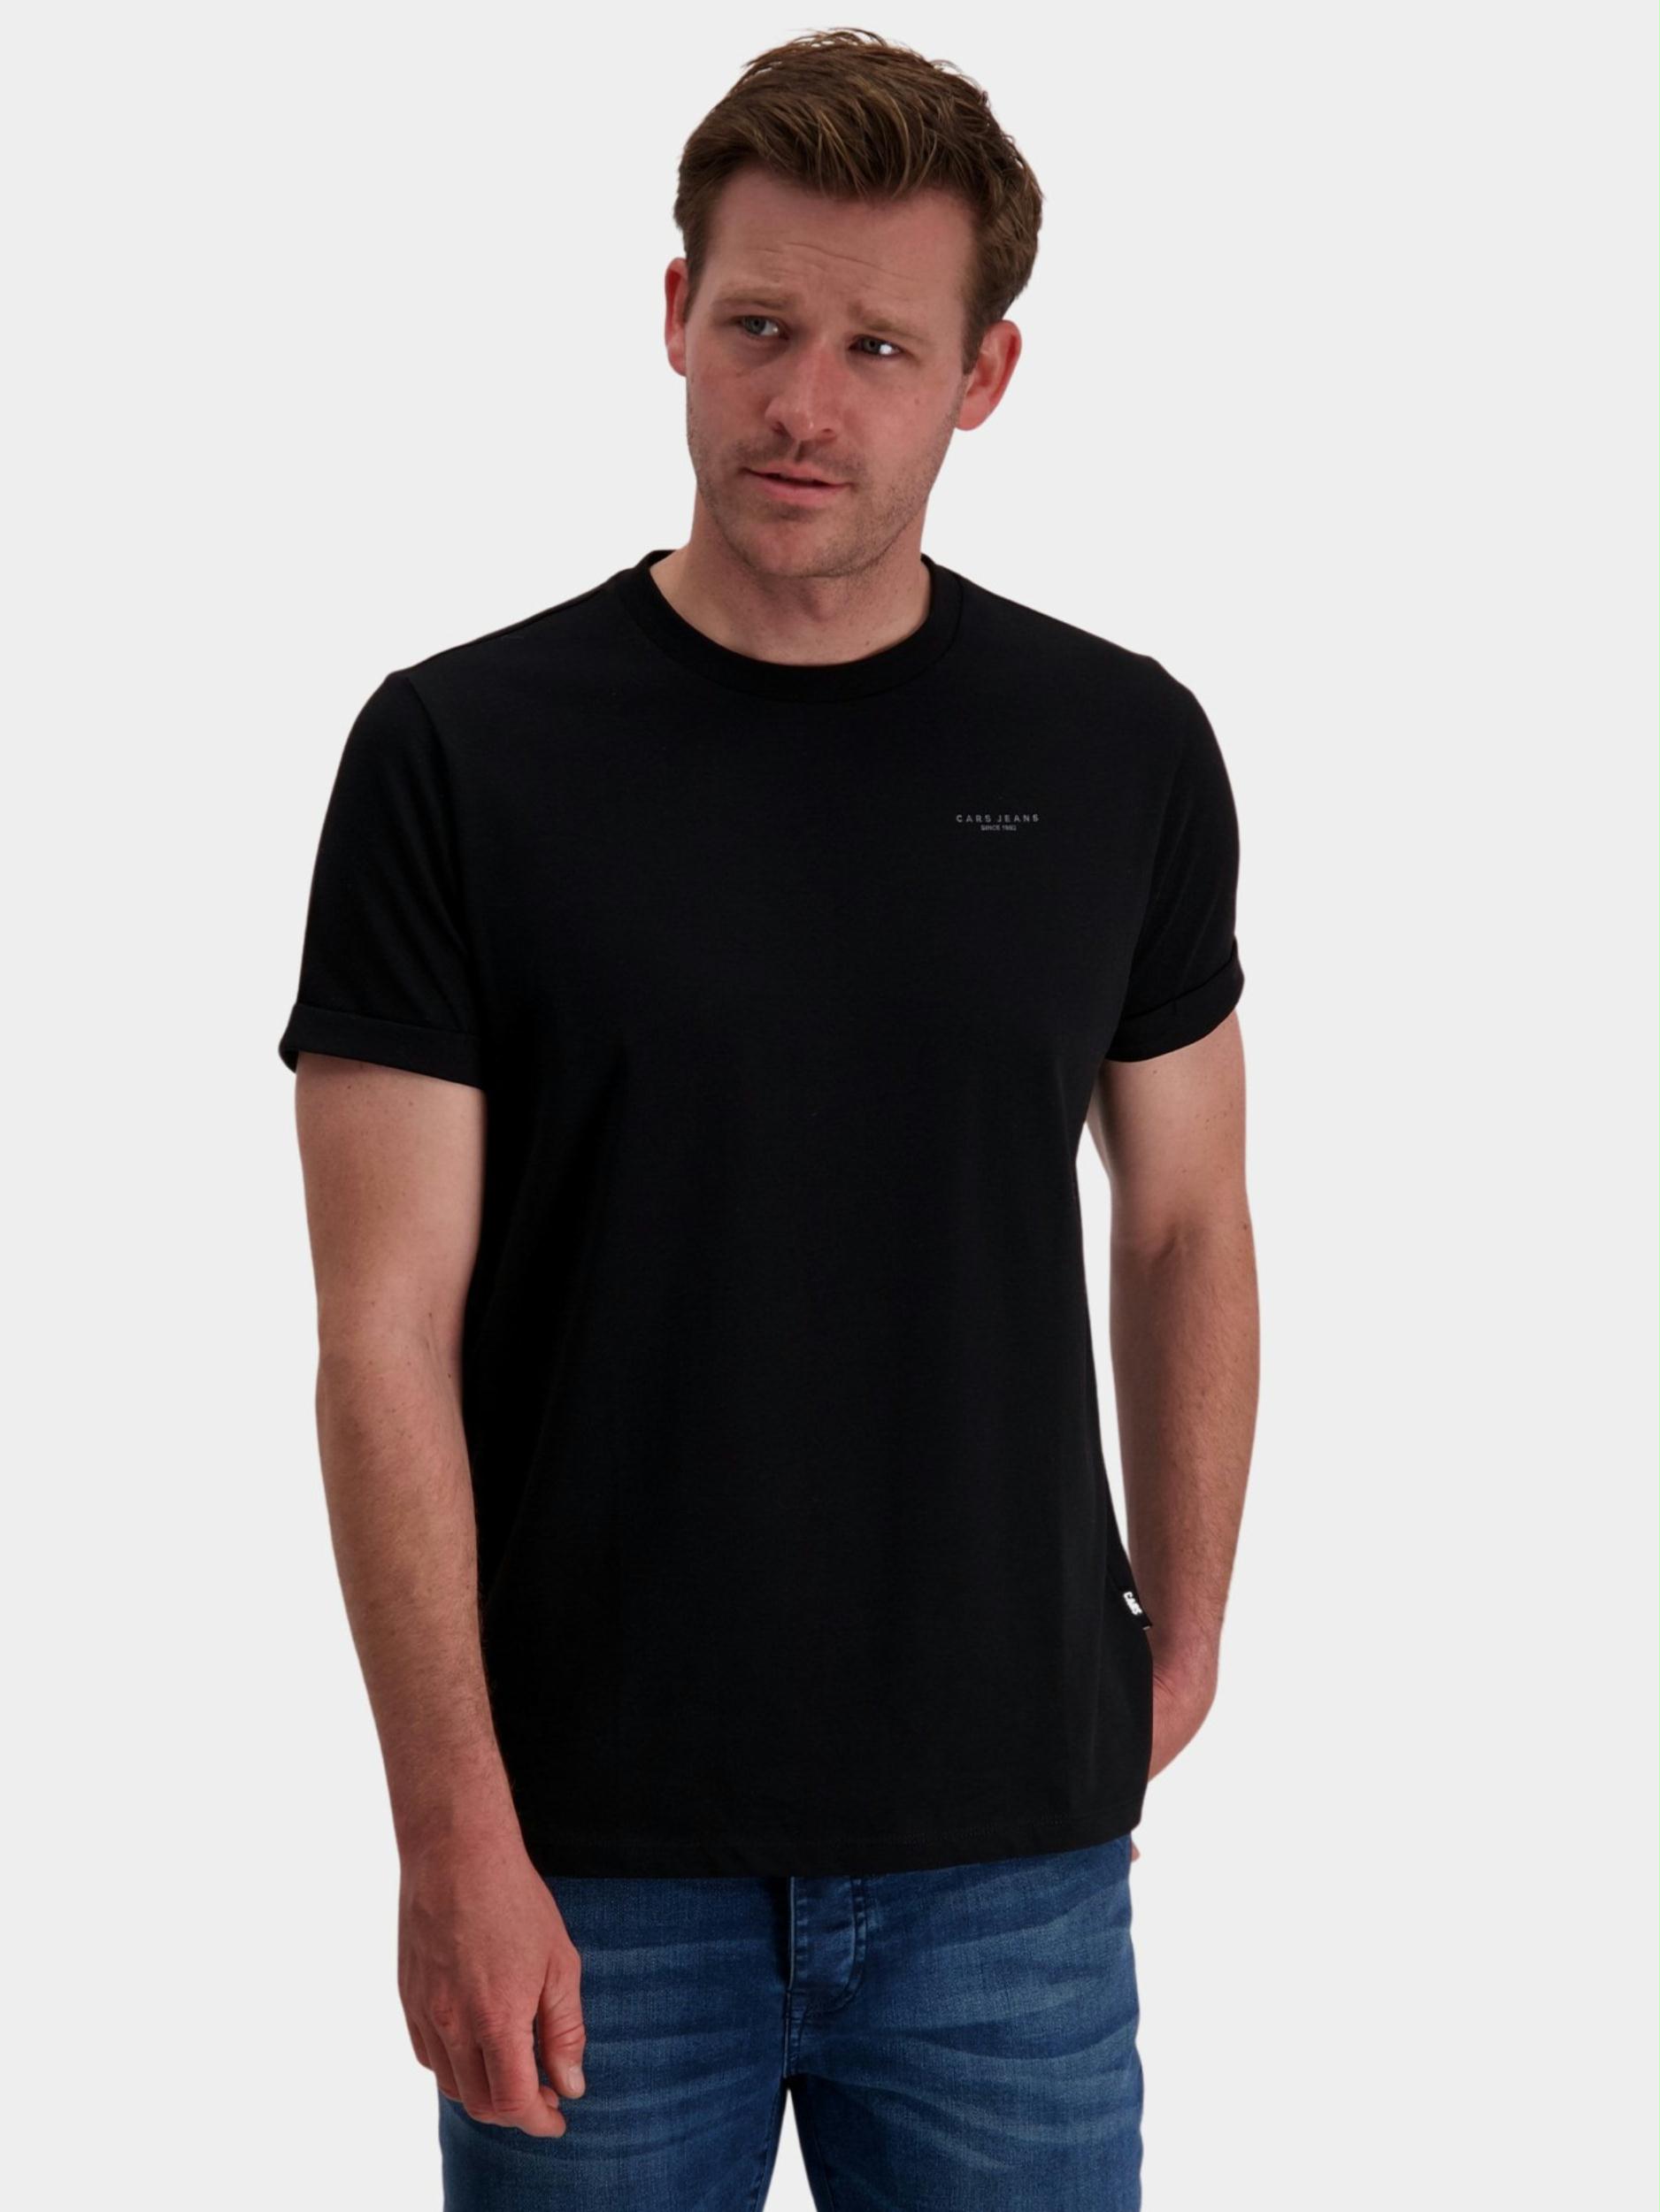 Cars Jeans T-shirt korte mouw Zwart Fester 64437/01